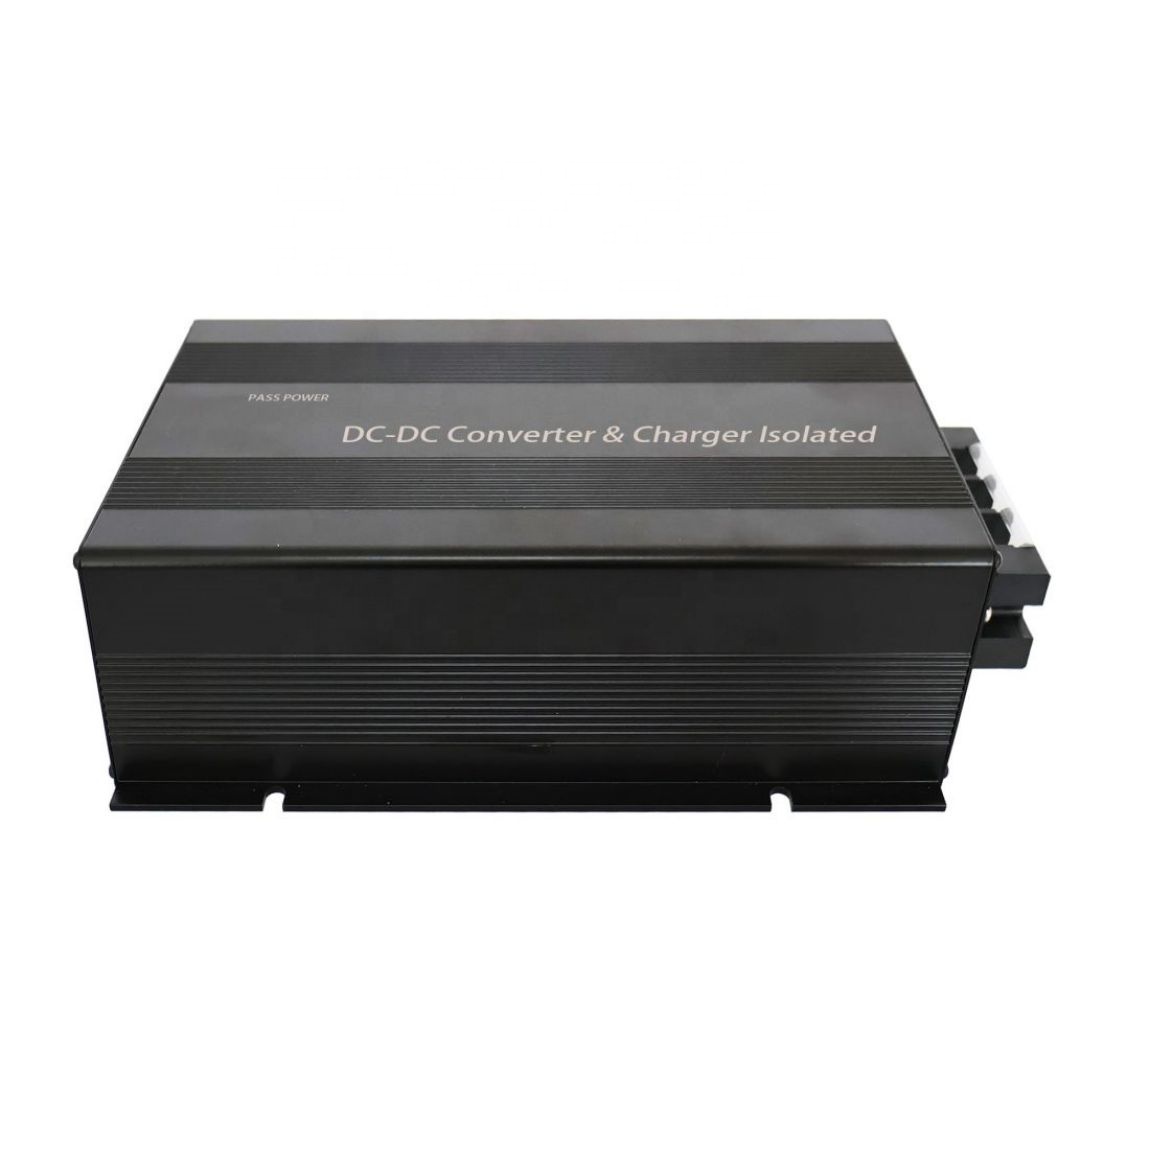 48v to 12v DC-DC intelligent converter voltage regulator used for different voltage battery system